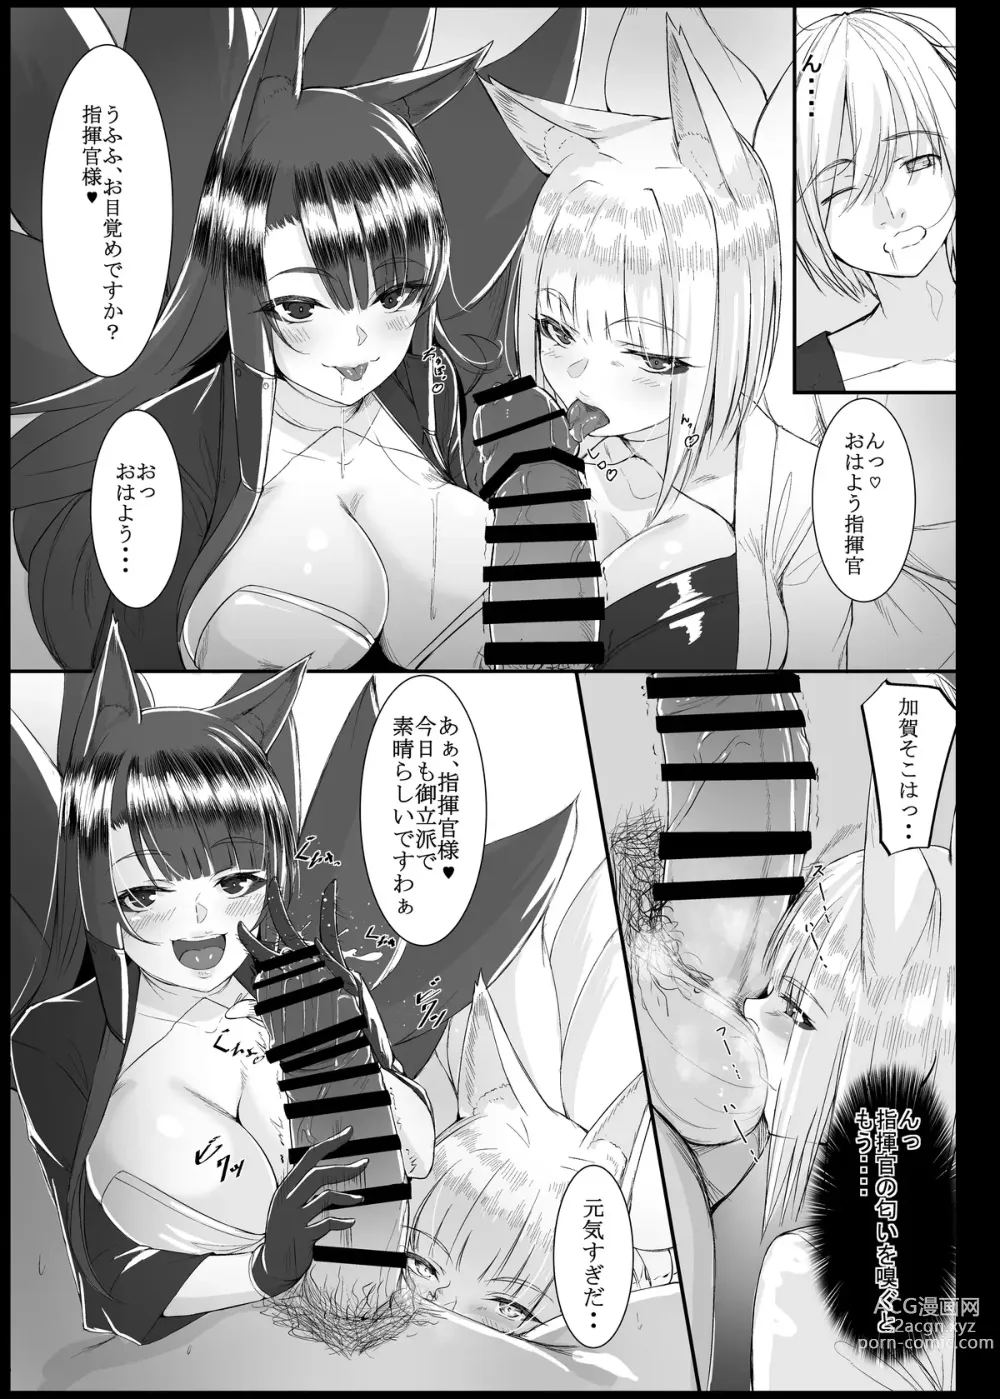 Page 6 of doujinshi My secret secretary ships